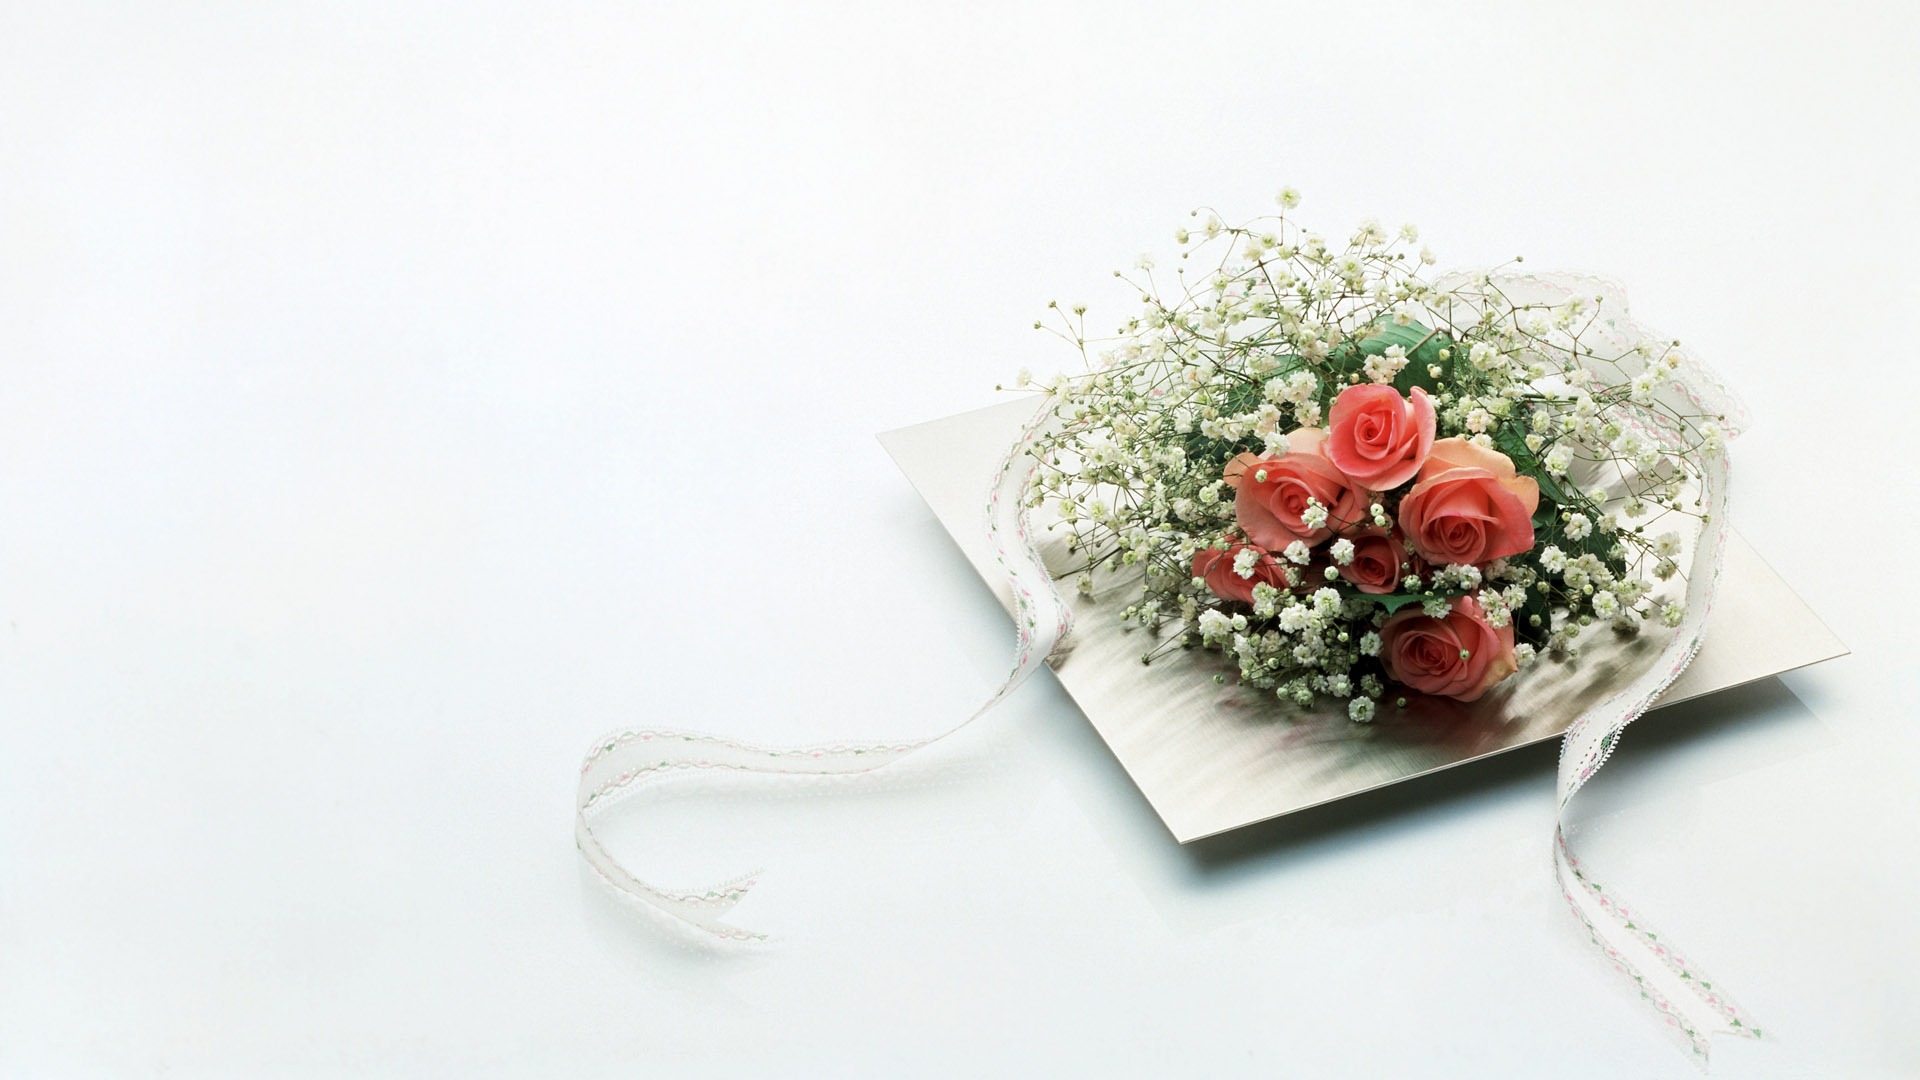 婚庆鲜花物品壁纸(二)3 - 1920x1080